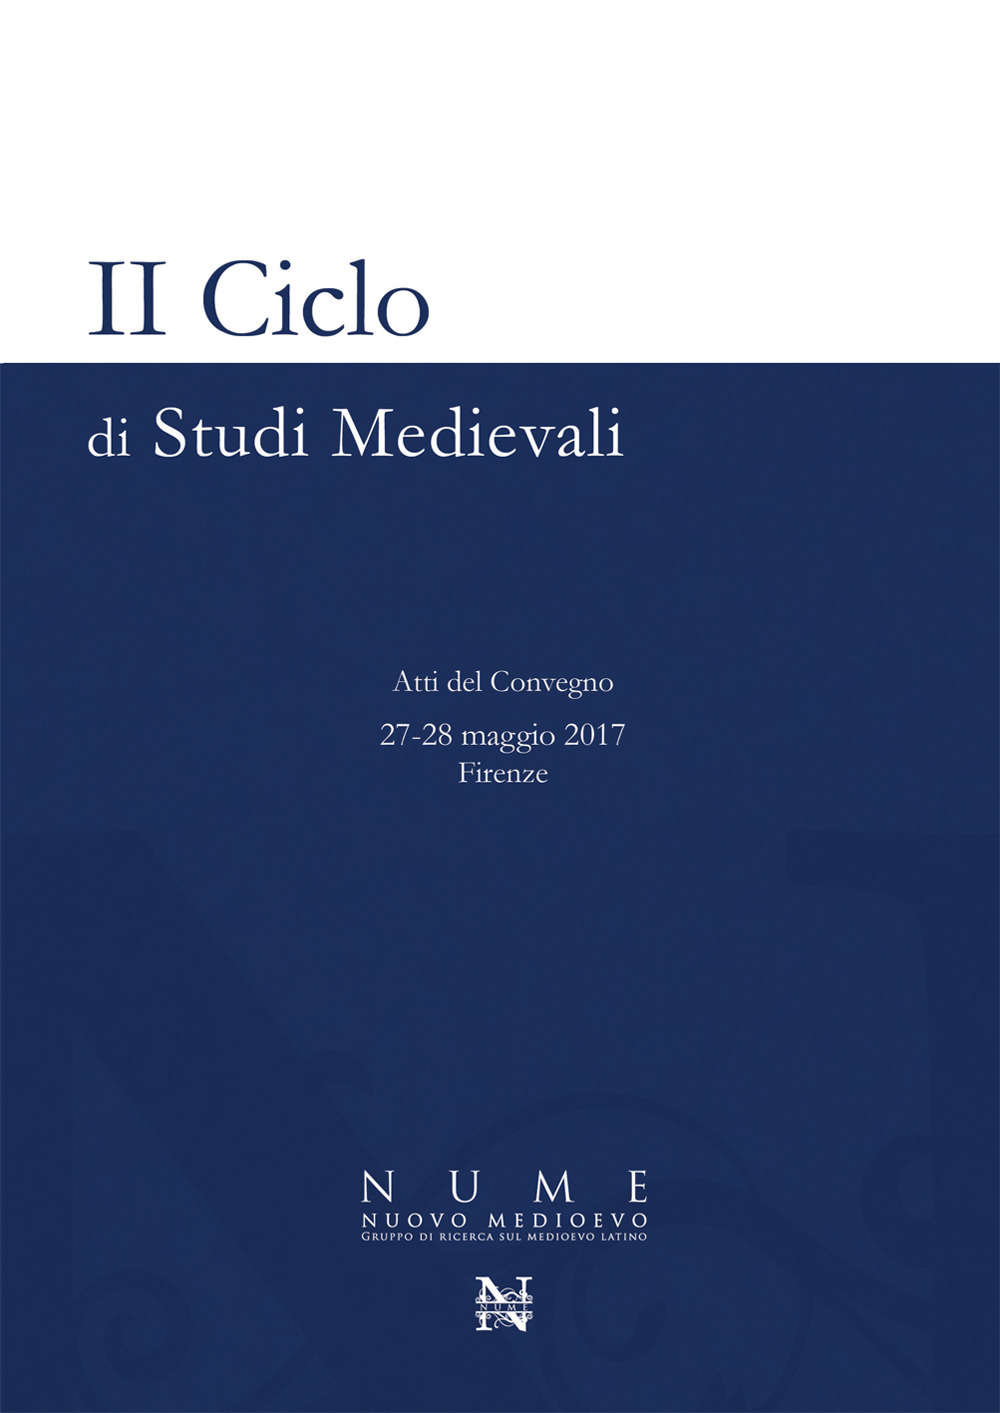 2° ciclo di studi medievali. Atti del Convegno (Firenze, 27-28 maggio 2017)